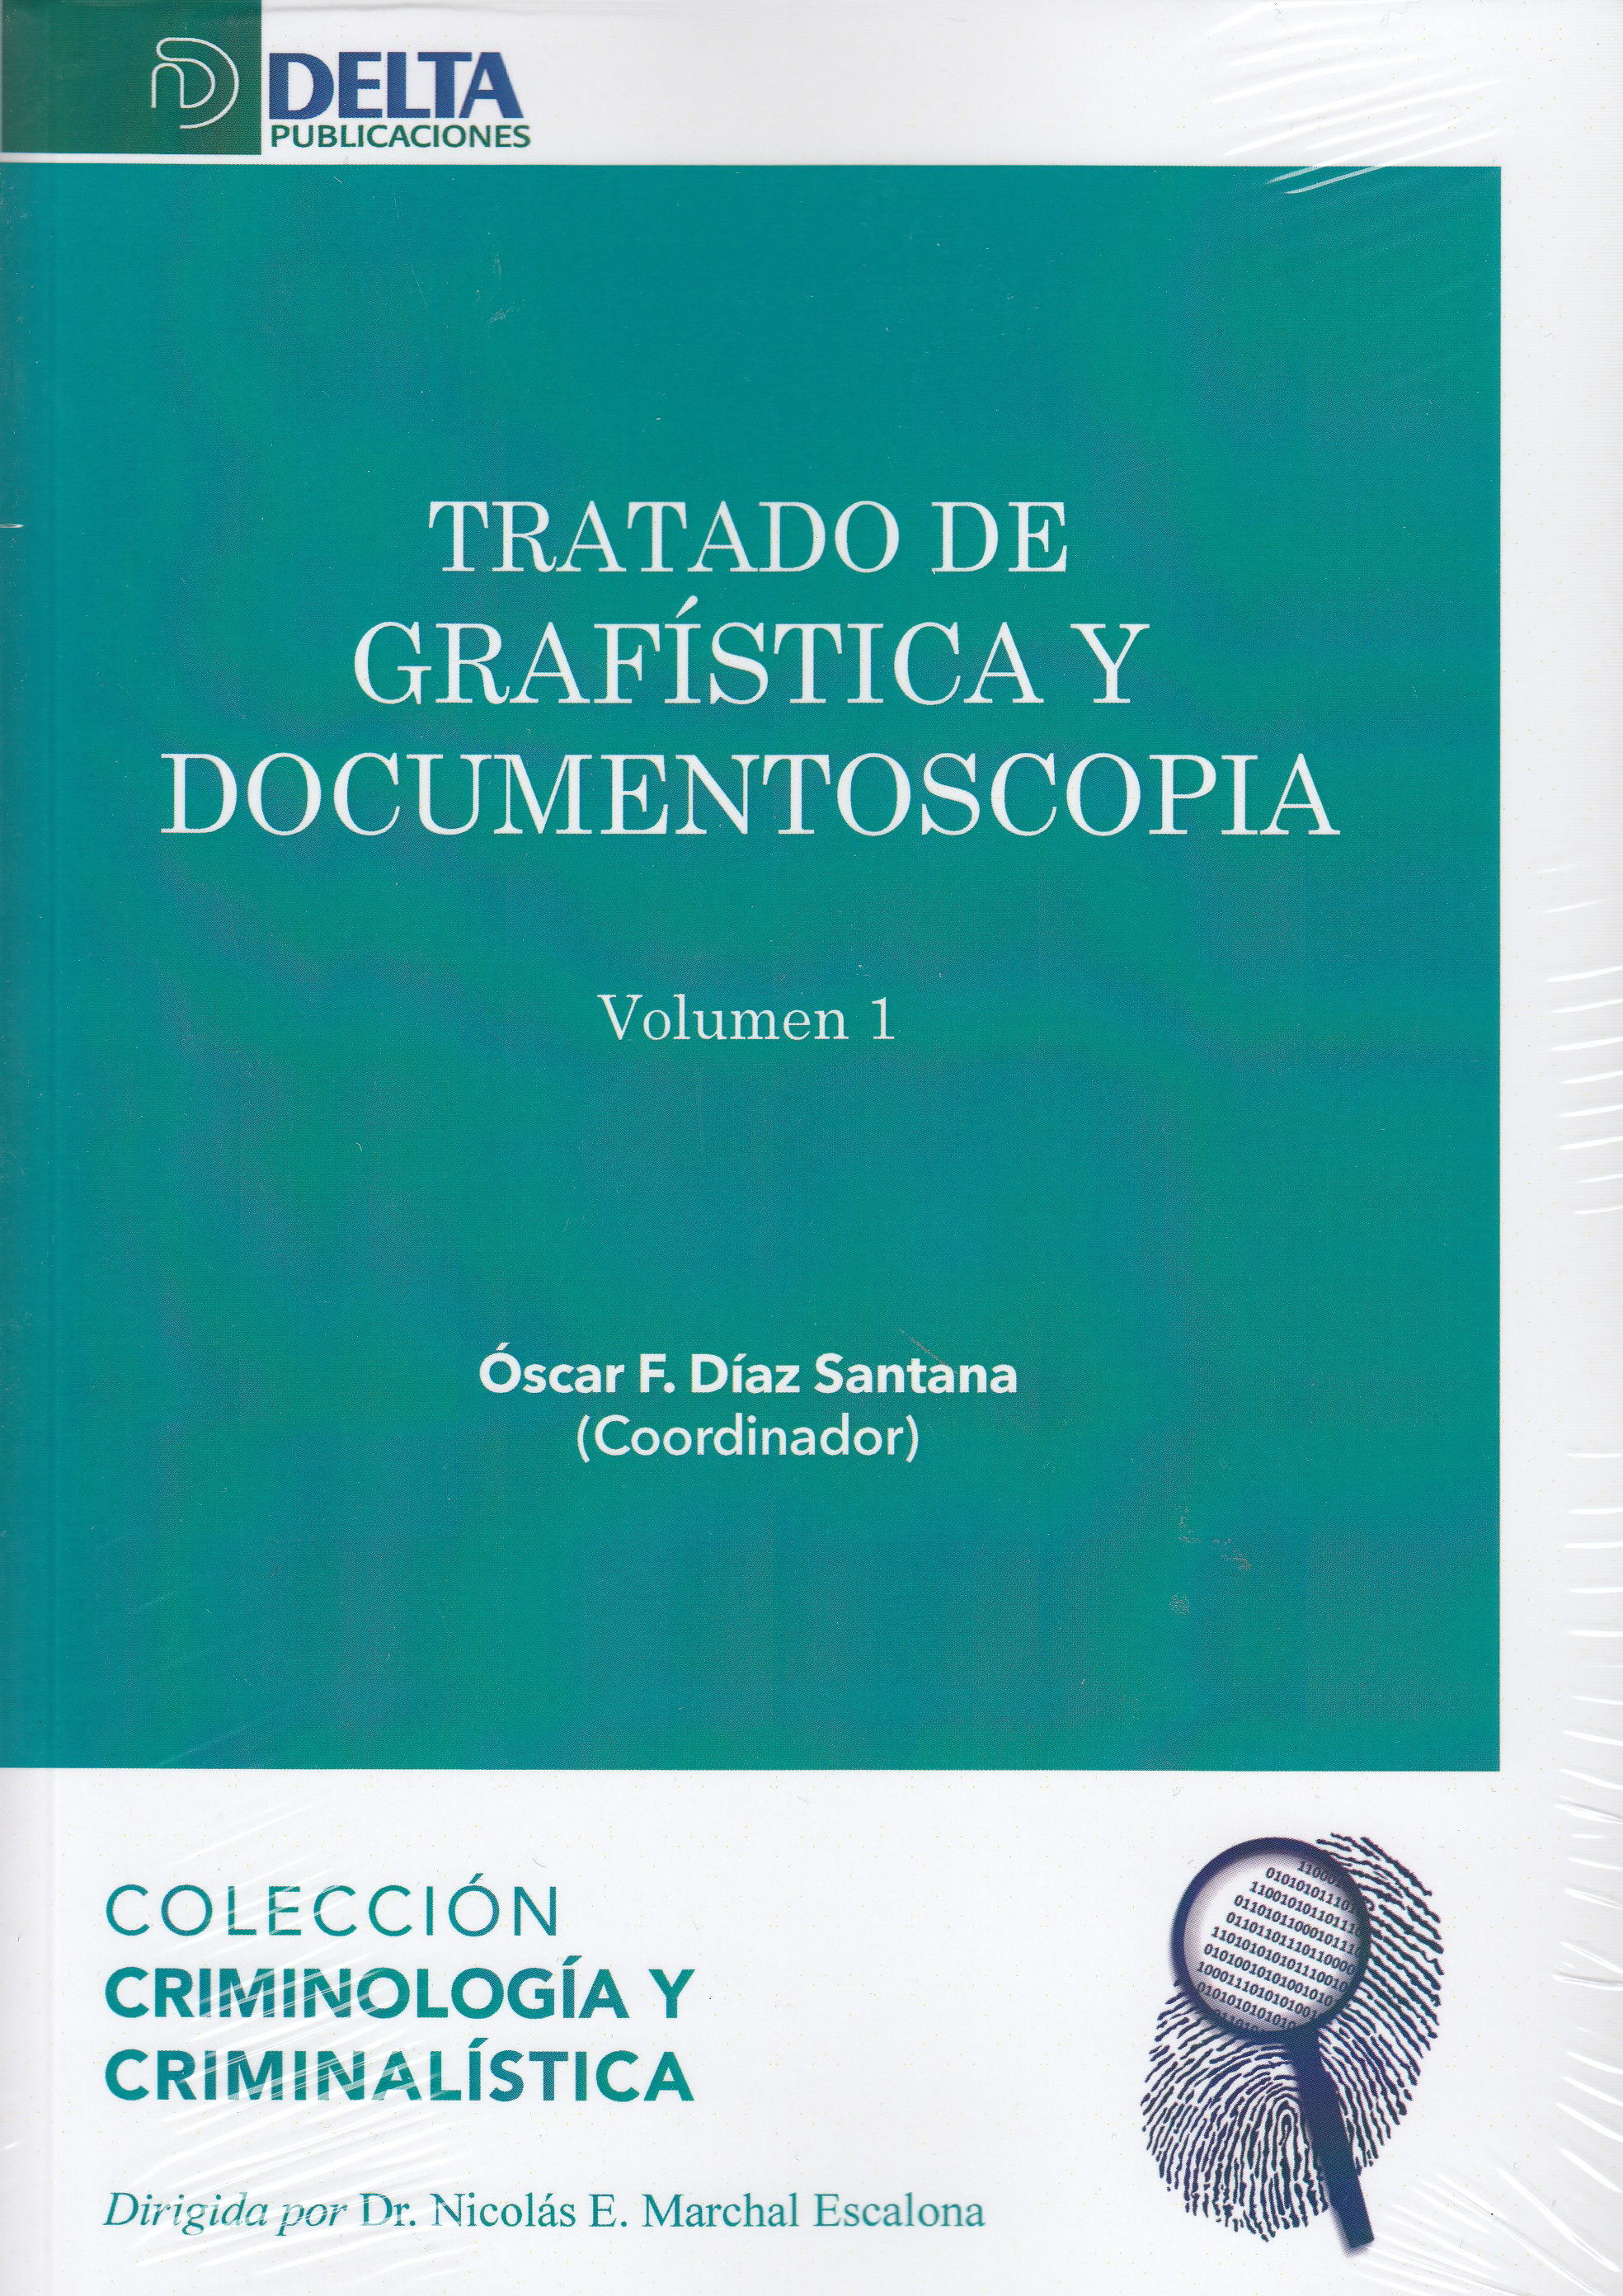 Tratado de grafística y documentoscopia